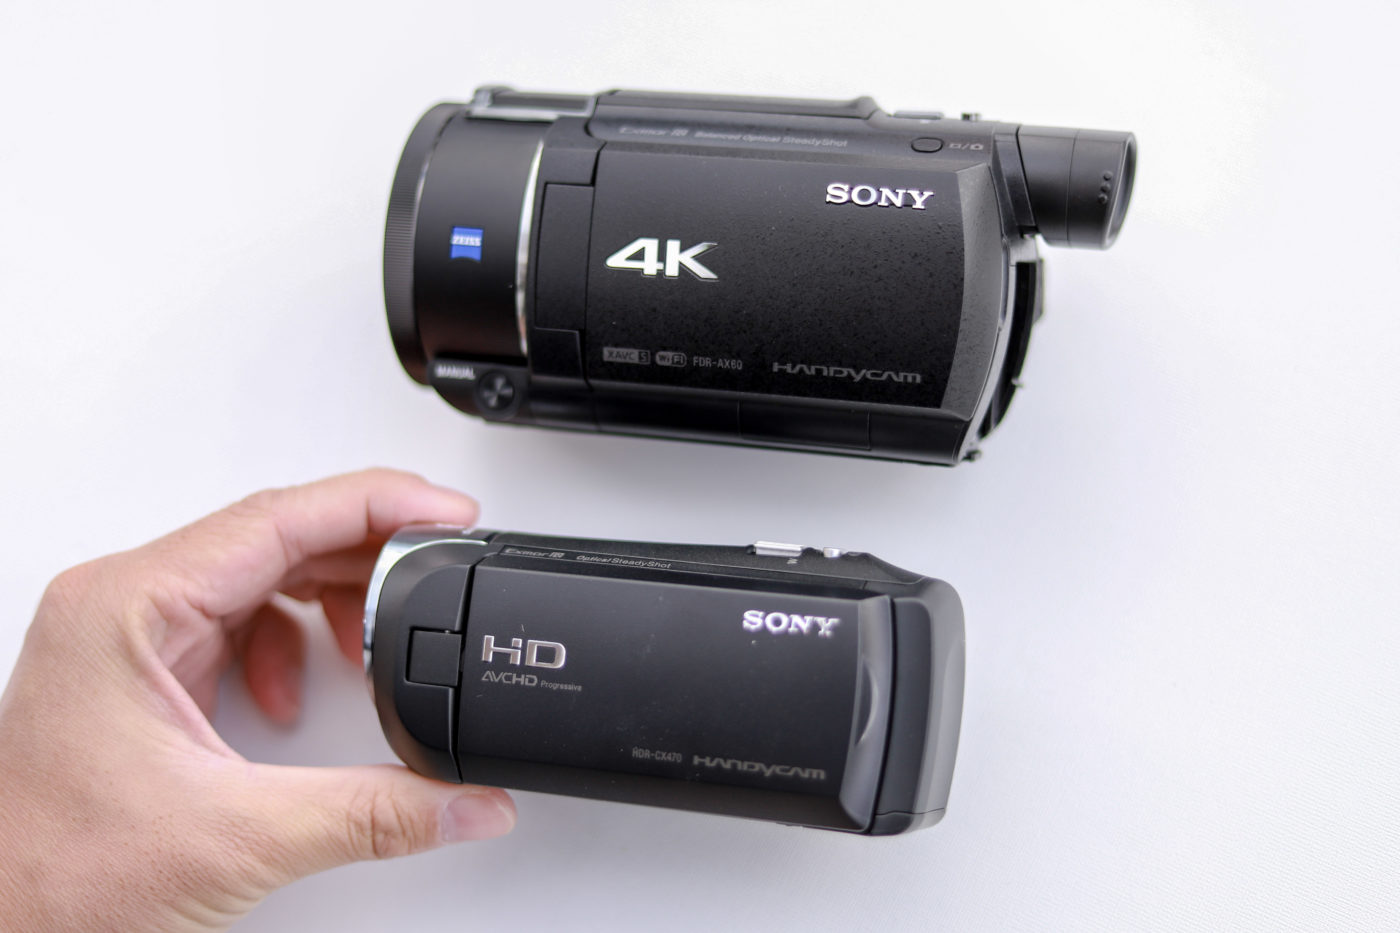 【売れ筋NO1】SONY 4Kビデオカメラ FDR-AX45を実写レビュー | Picky's